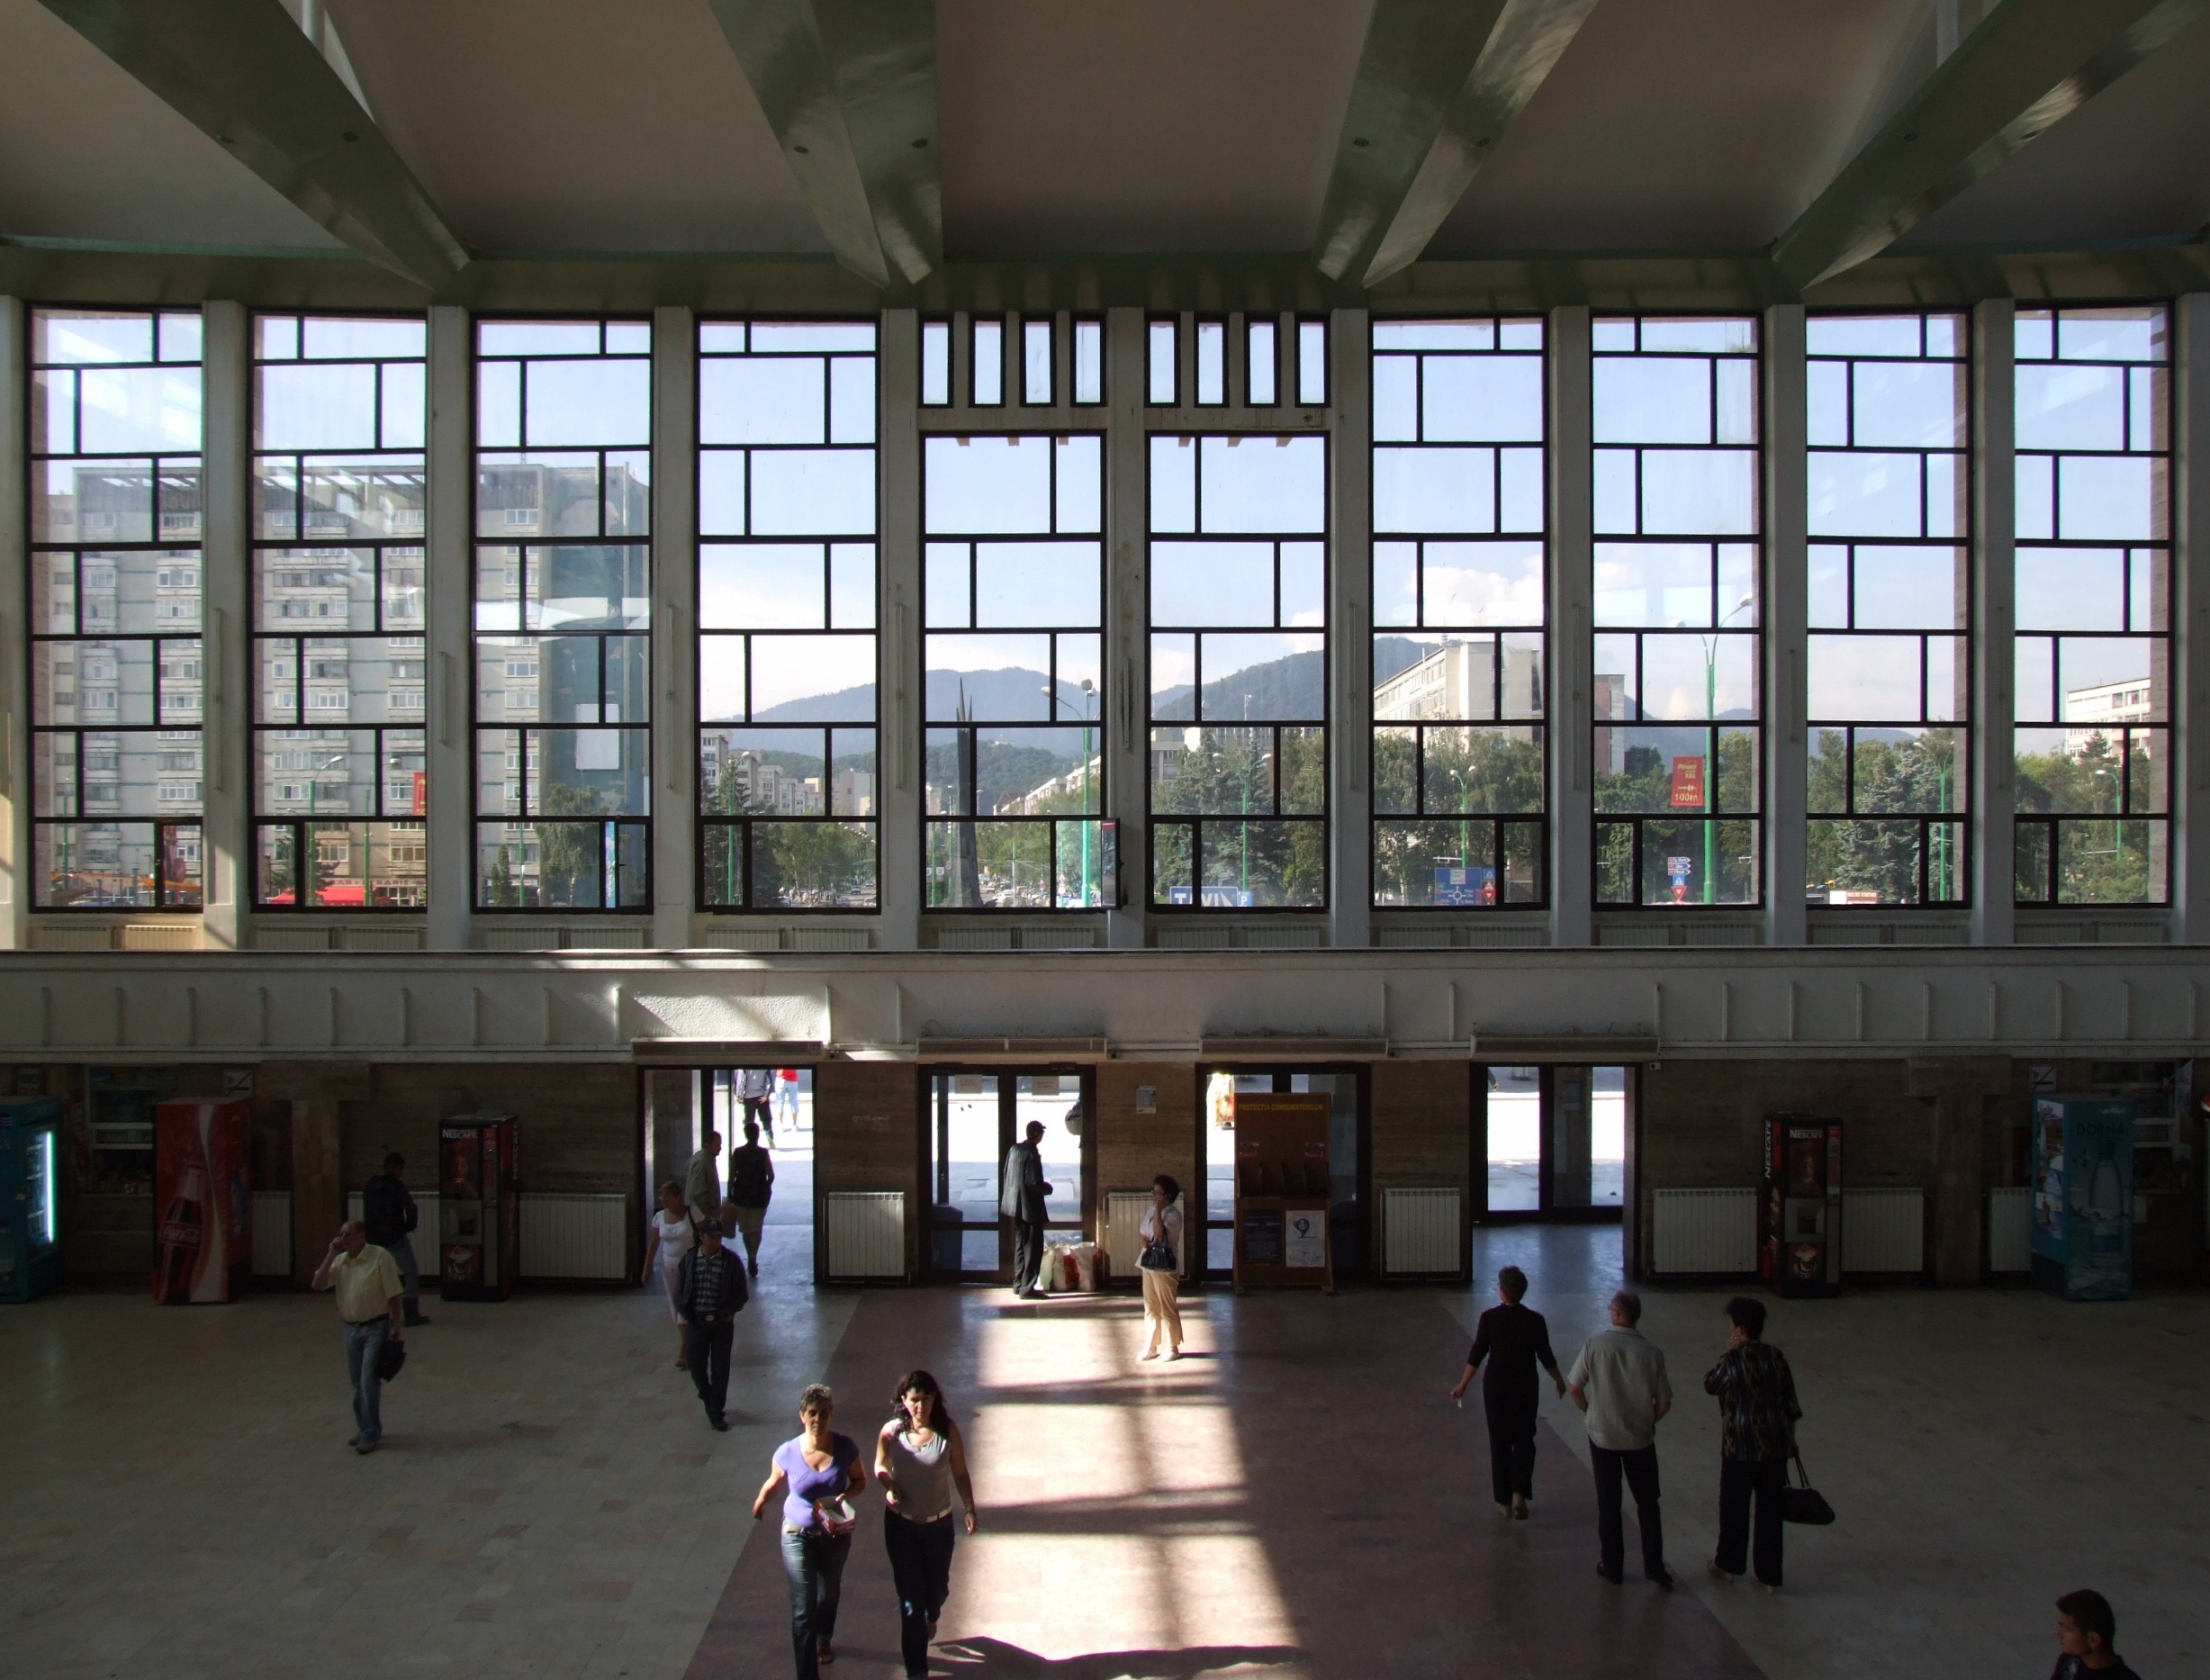 Braşov (Kronstadt, Brassó) - train station - interior